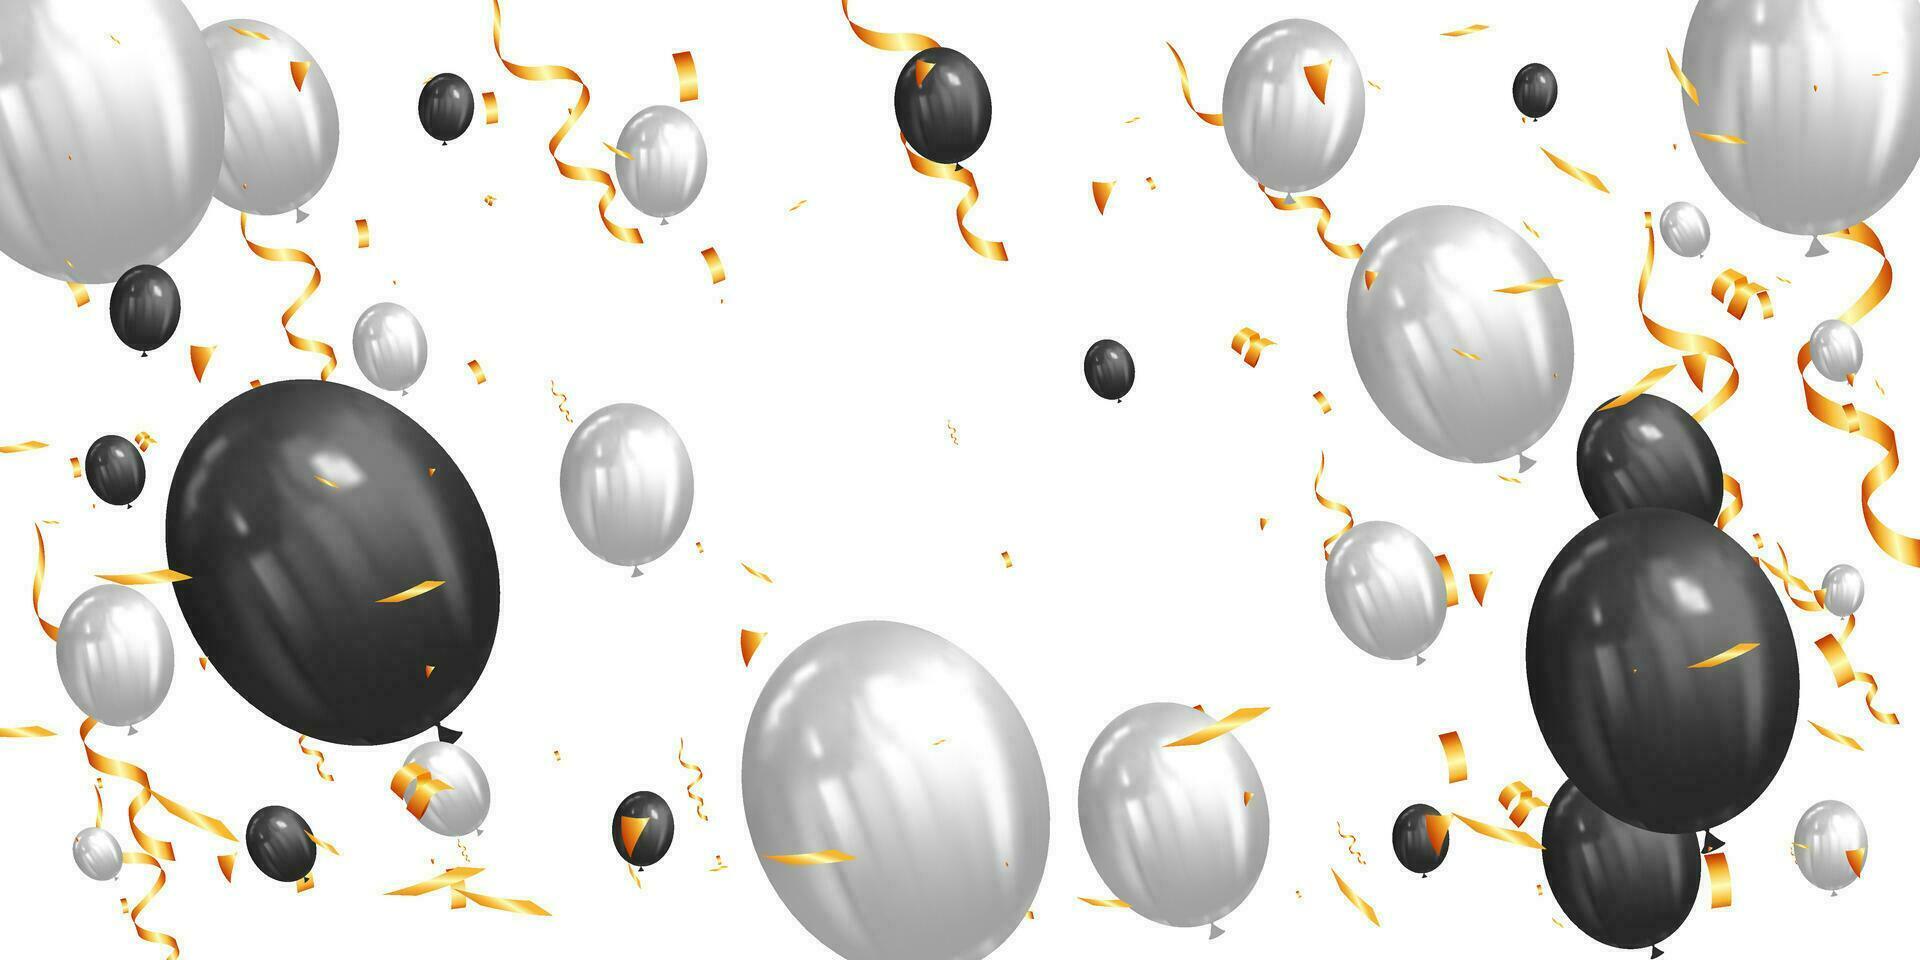 födelsedag firande fest, realistisk vit och svart festlig ballonger och gyllene konfetti affisch vektor